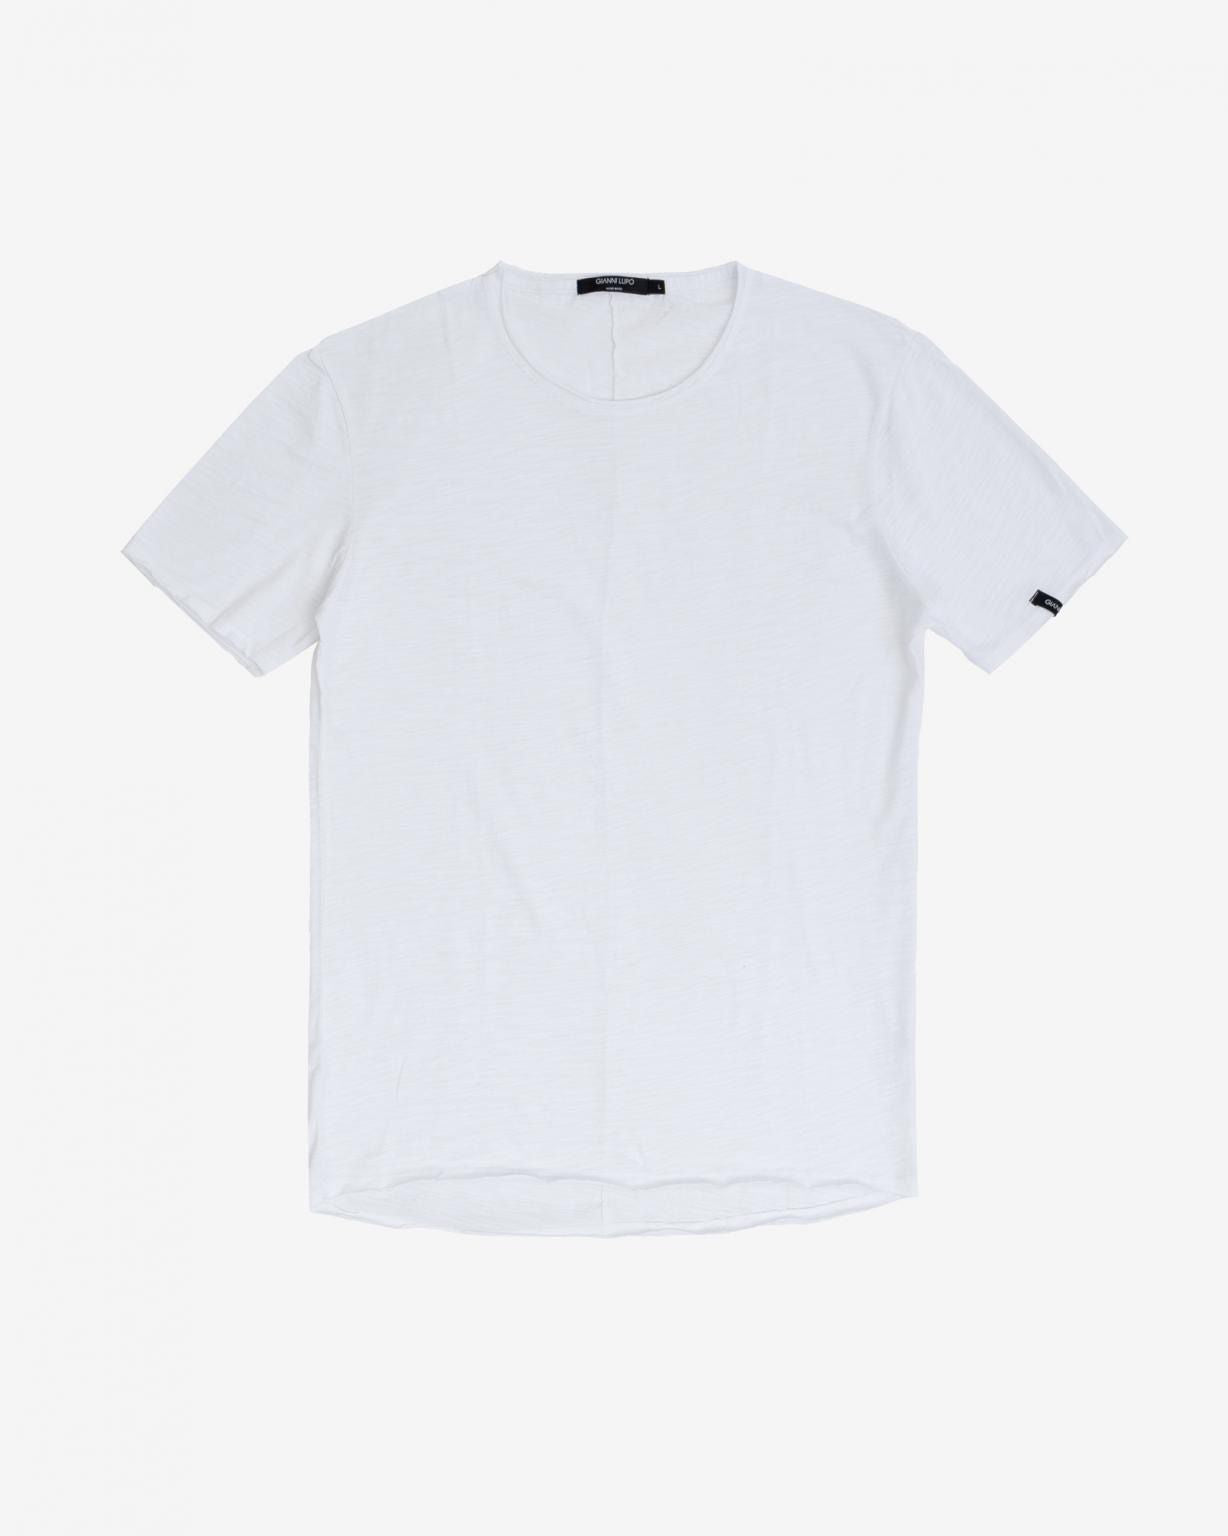 Camiseta Gianni Lupo basica blanca